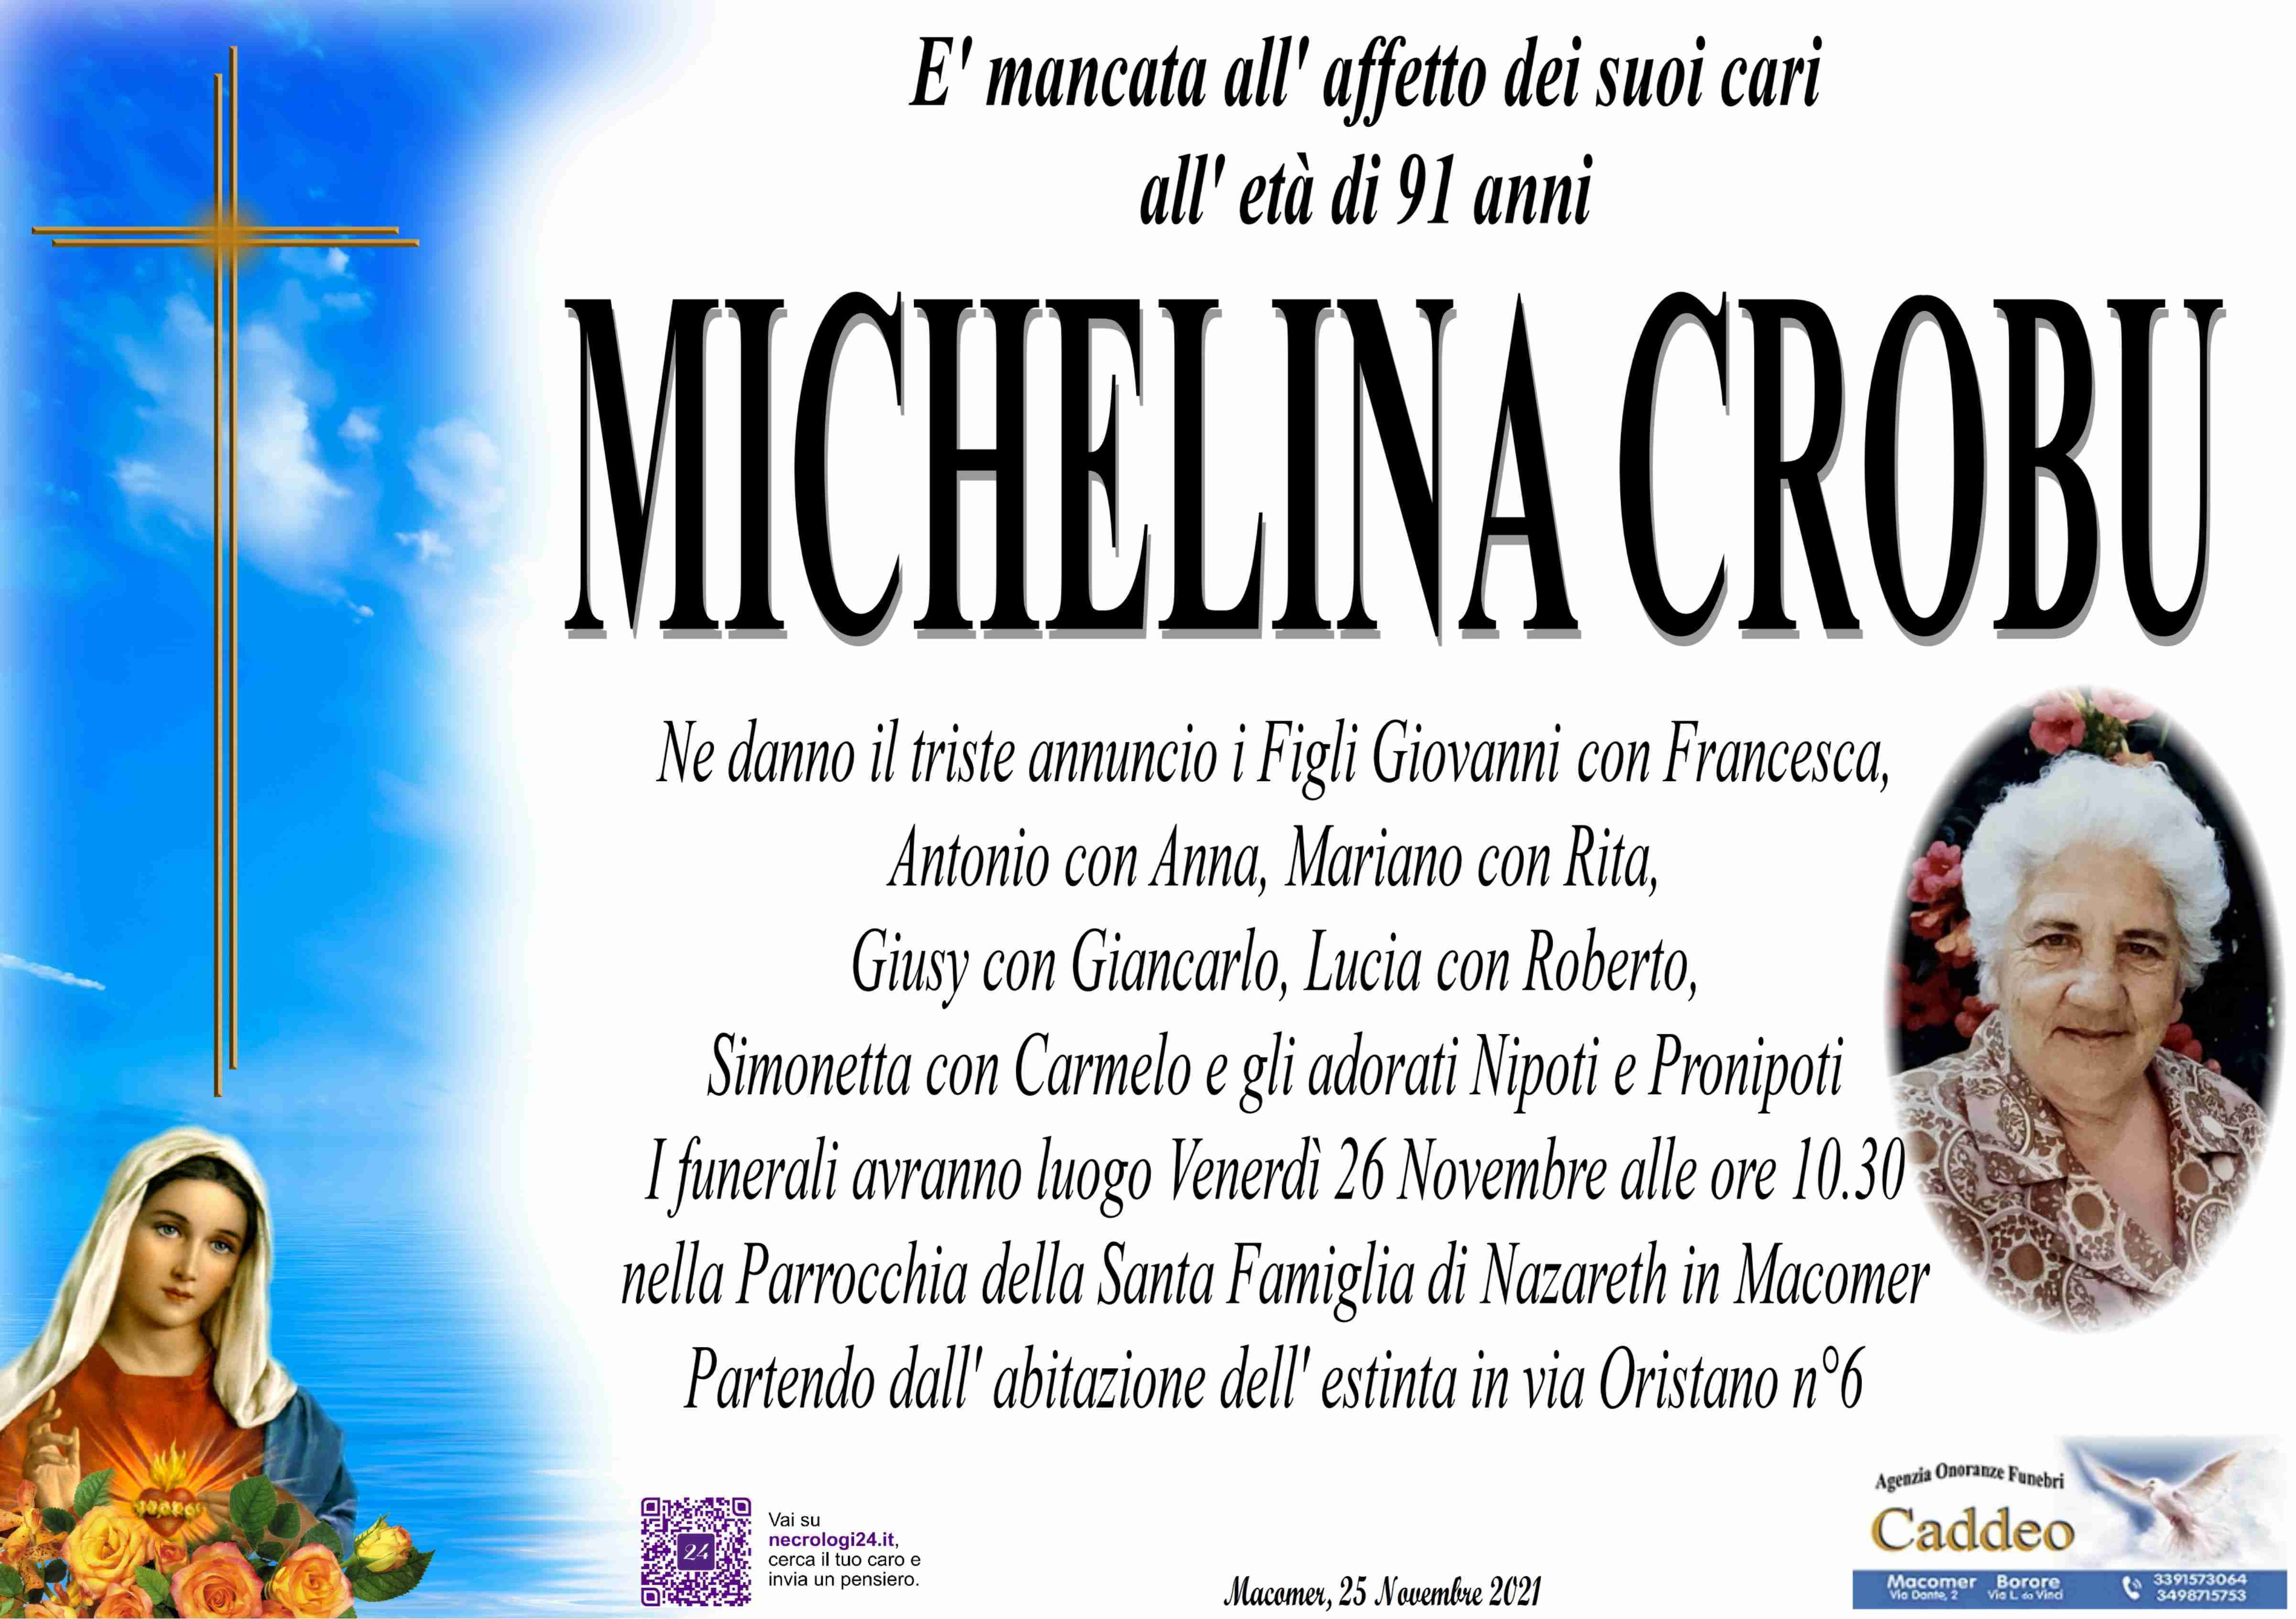 Michelina Crobu